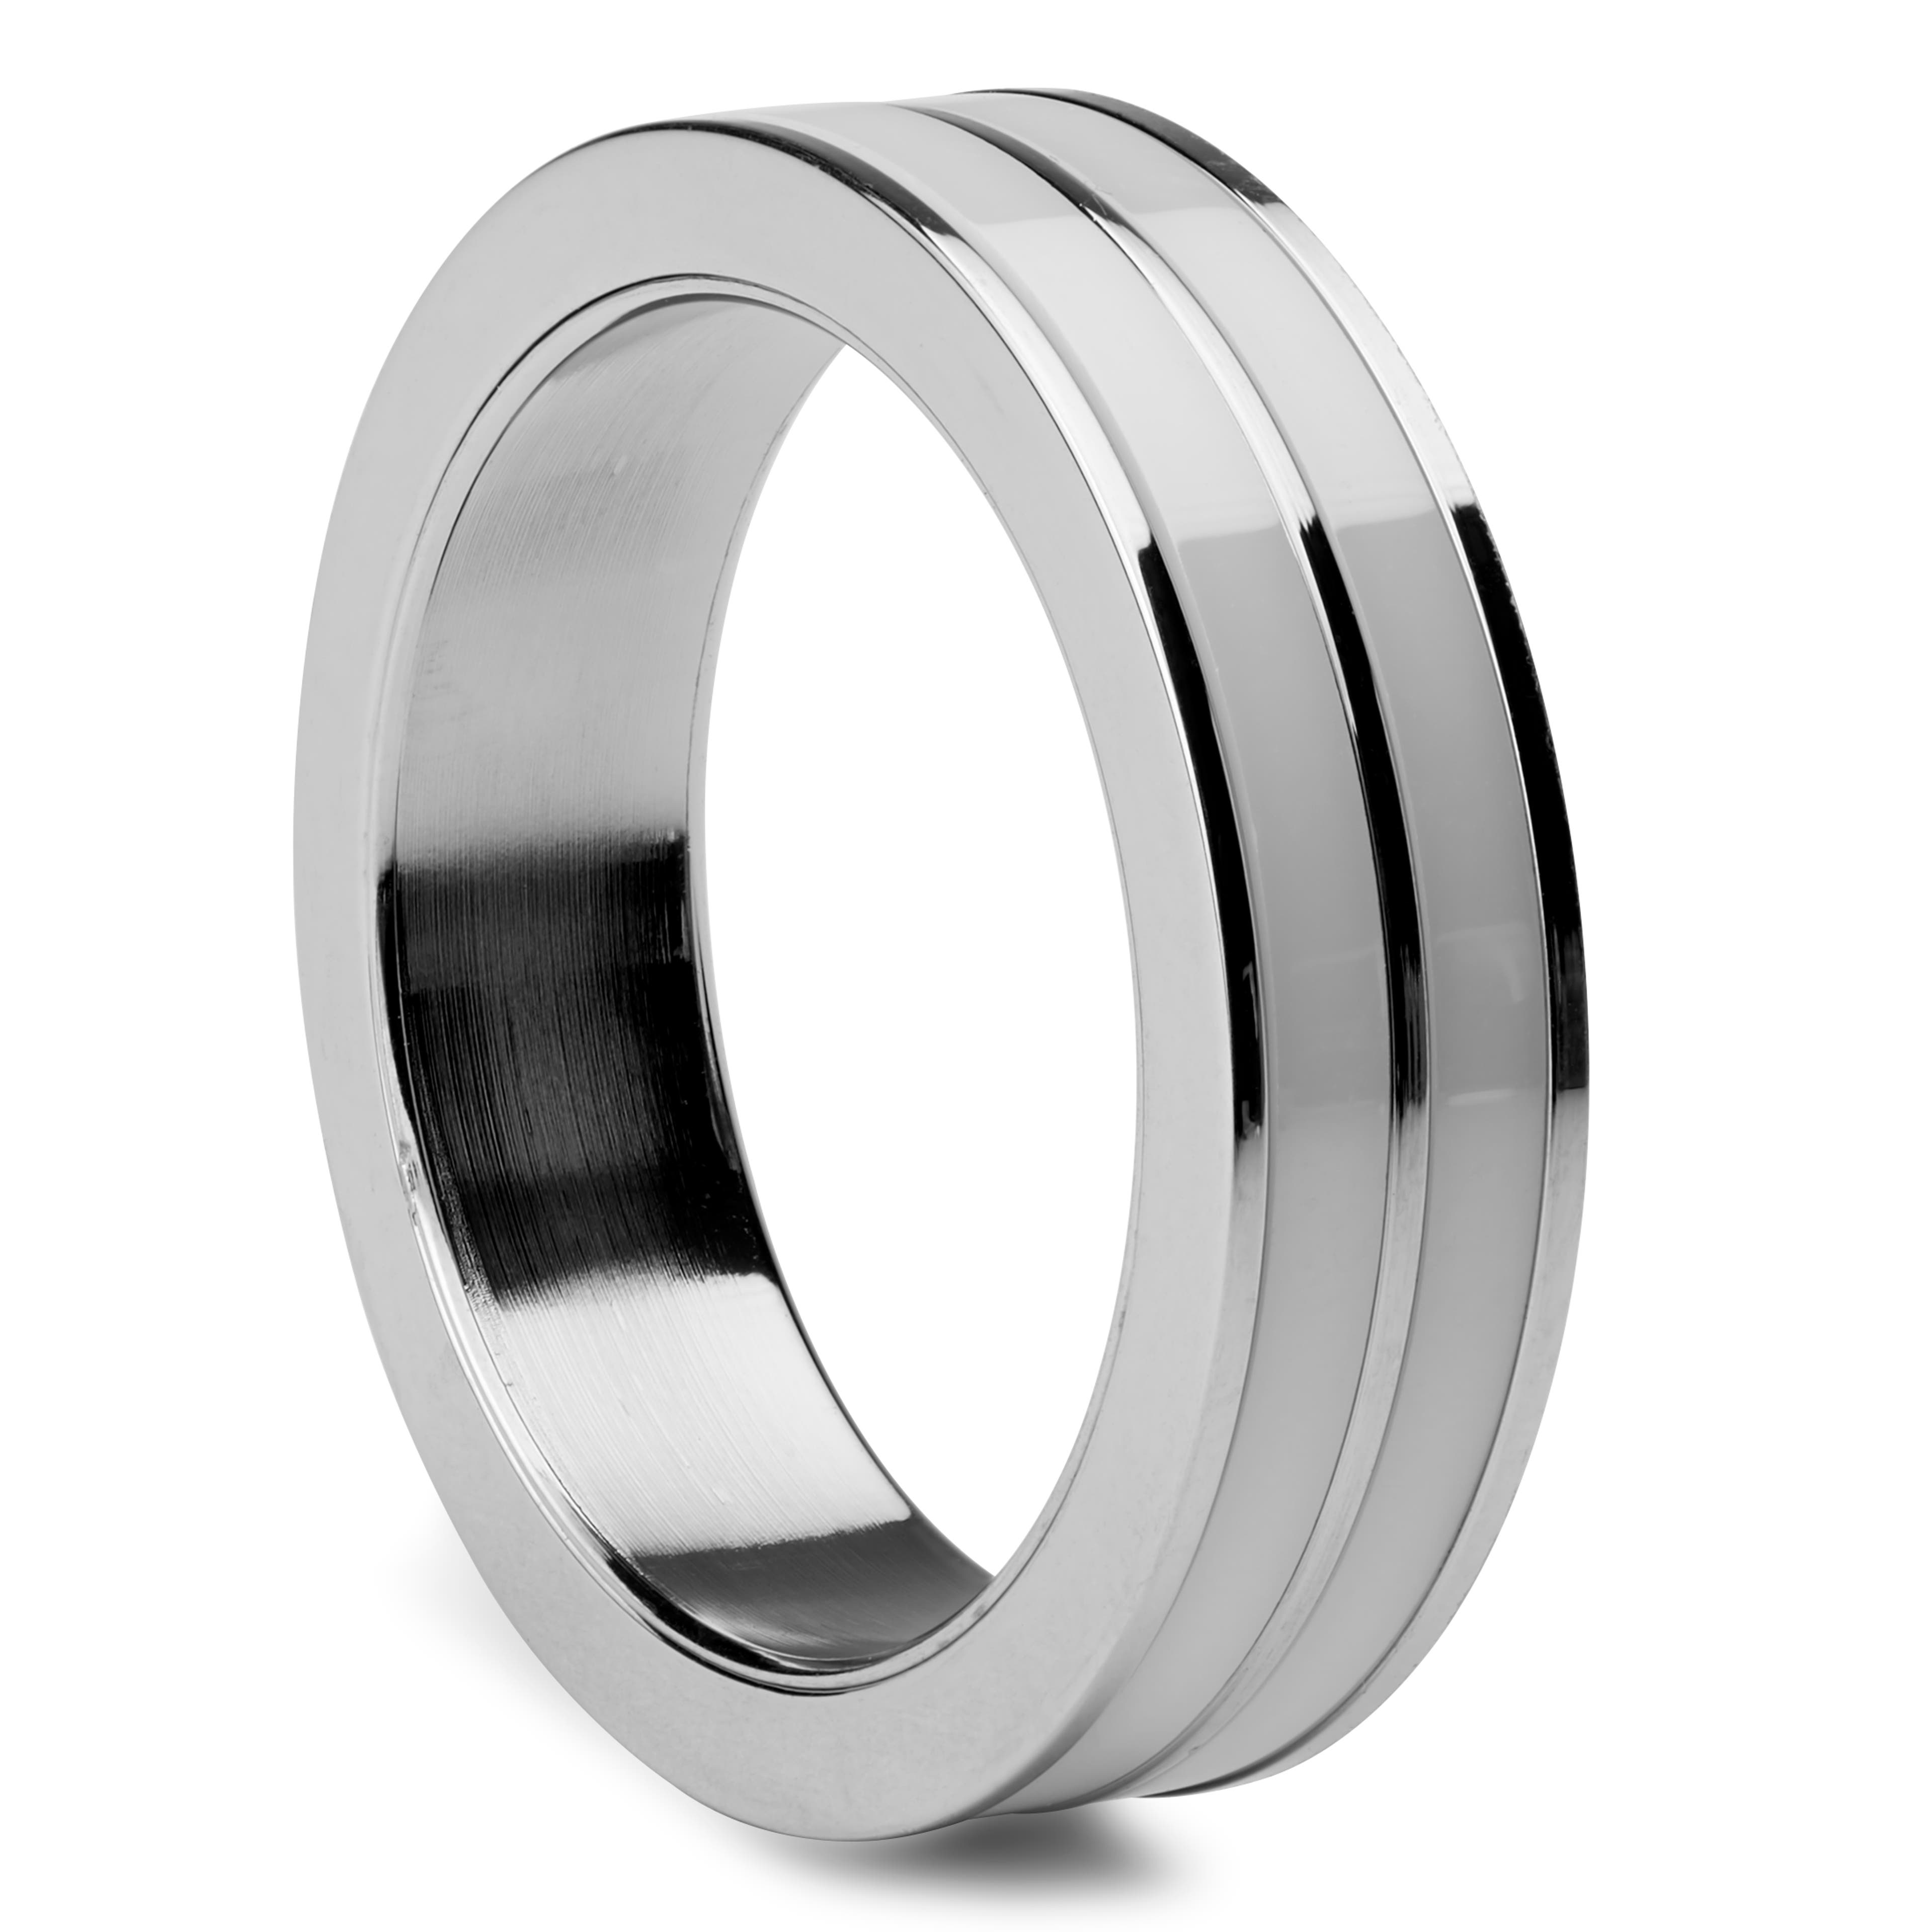 Ocelový prsten stříbrné barvy s bílou keramickou vložkou